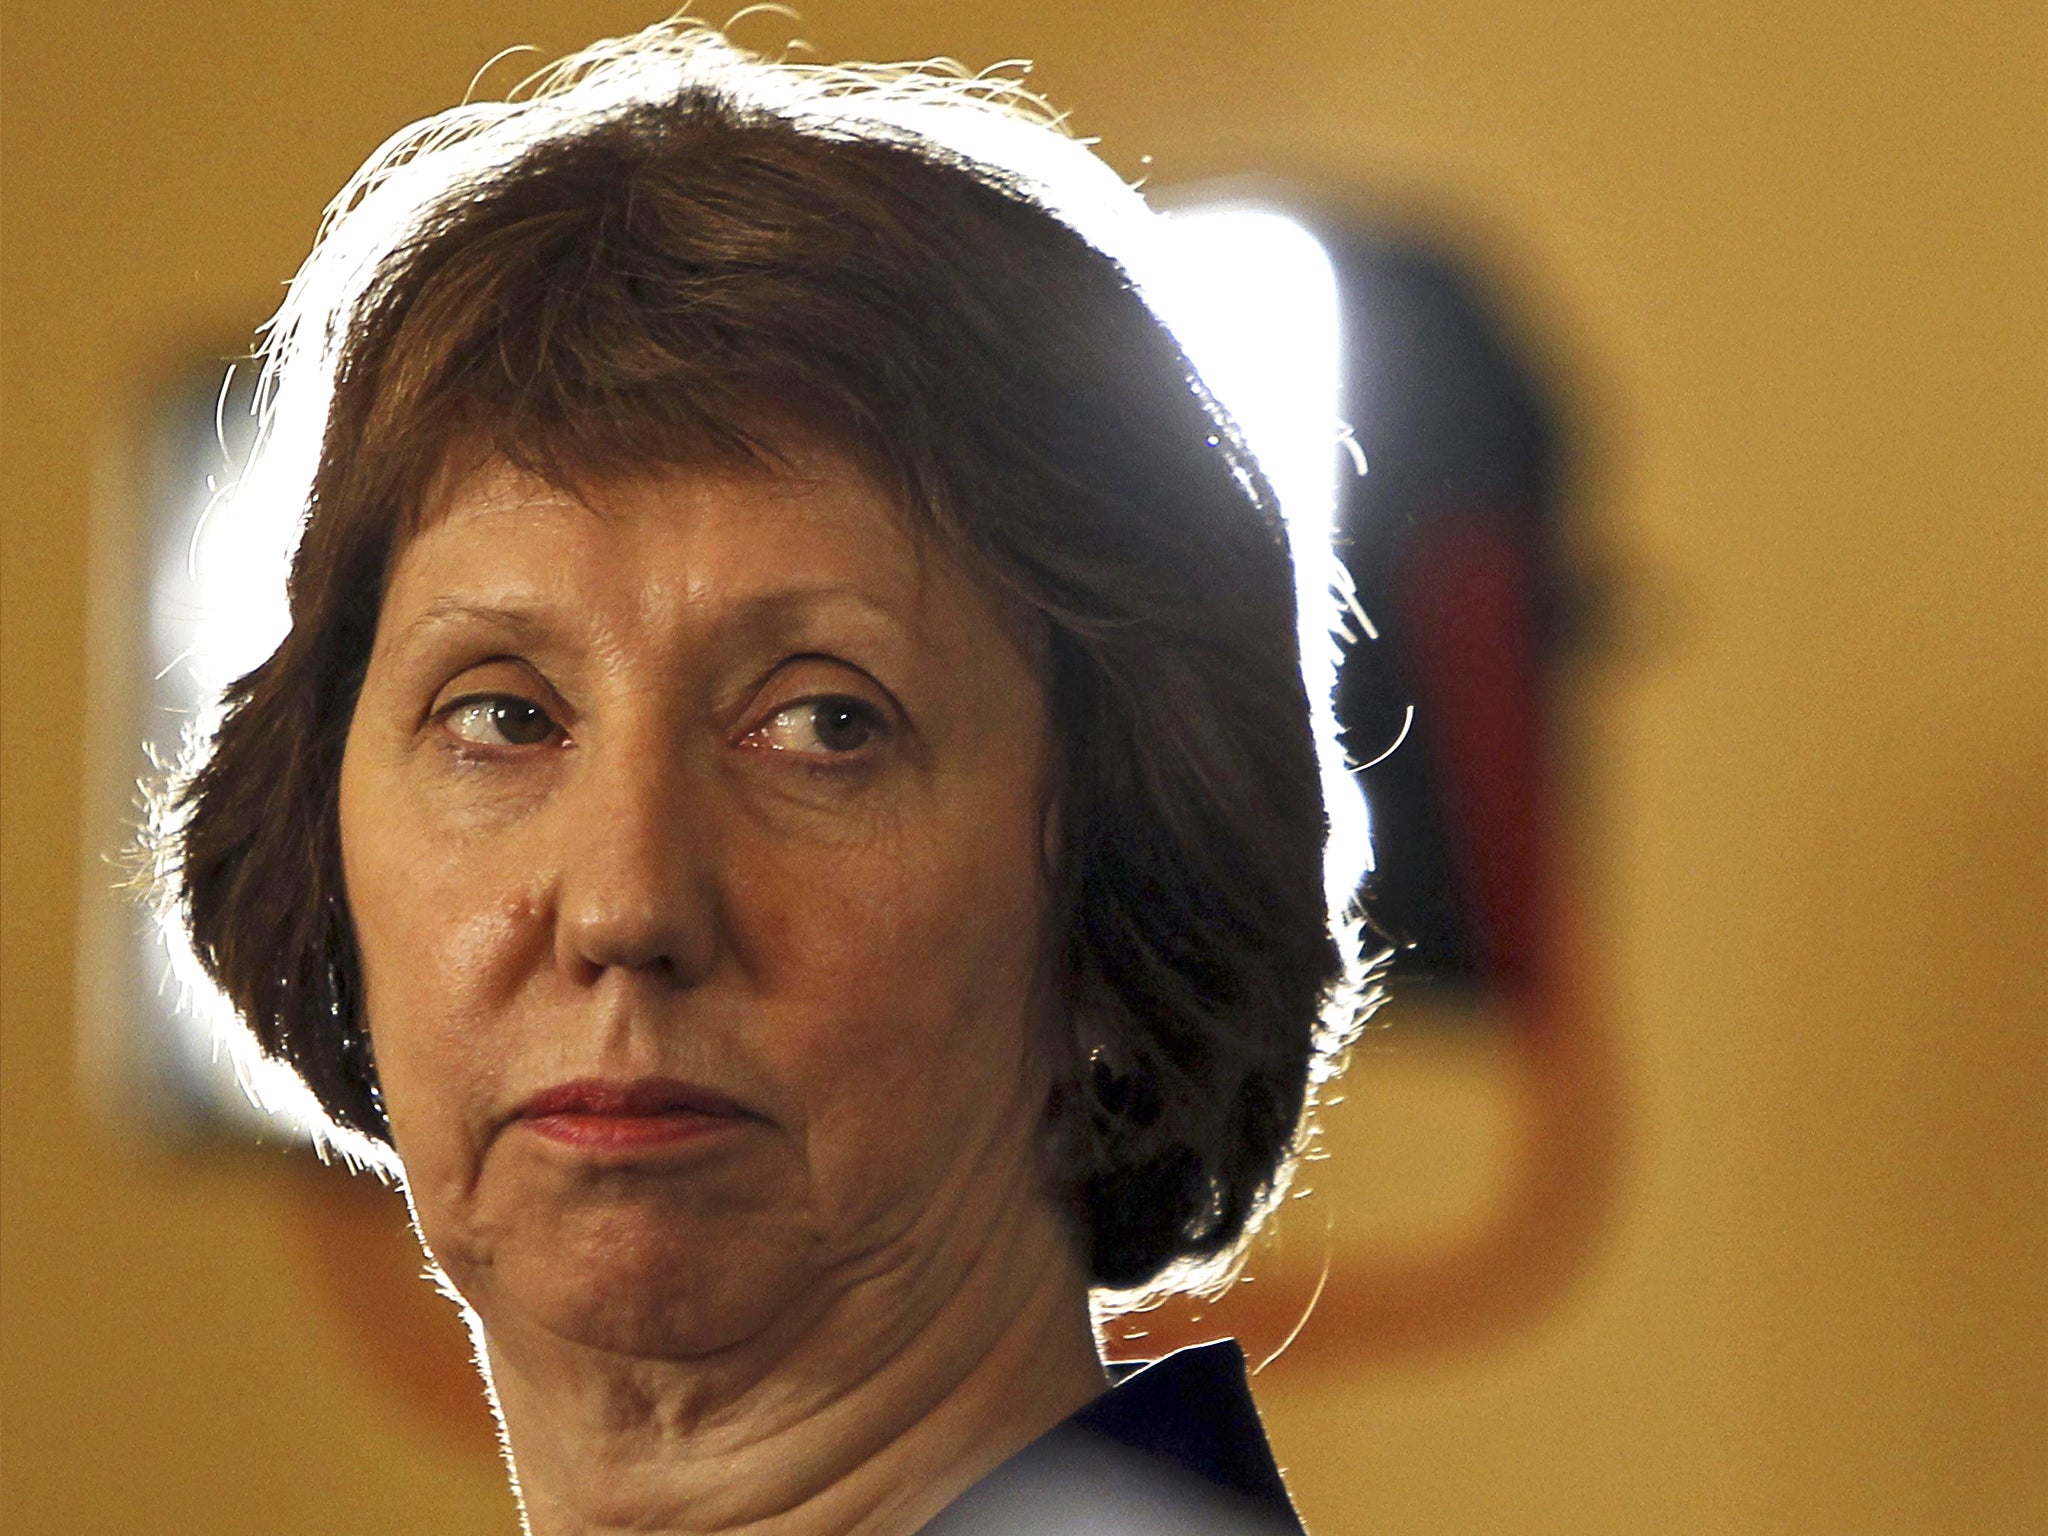 European Union foreign policy chief Catherine Ashton